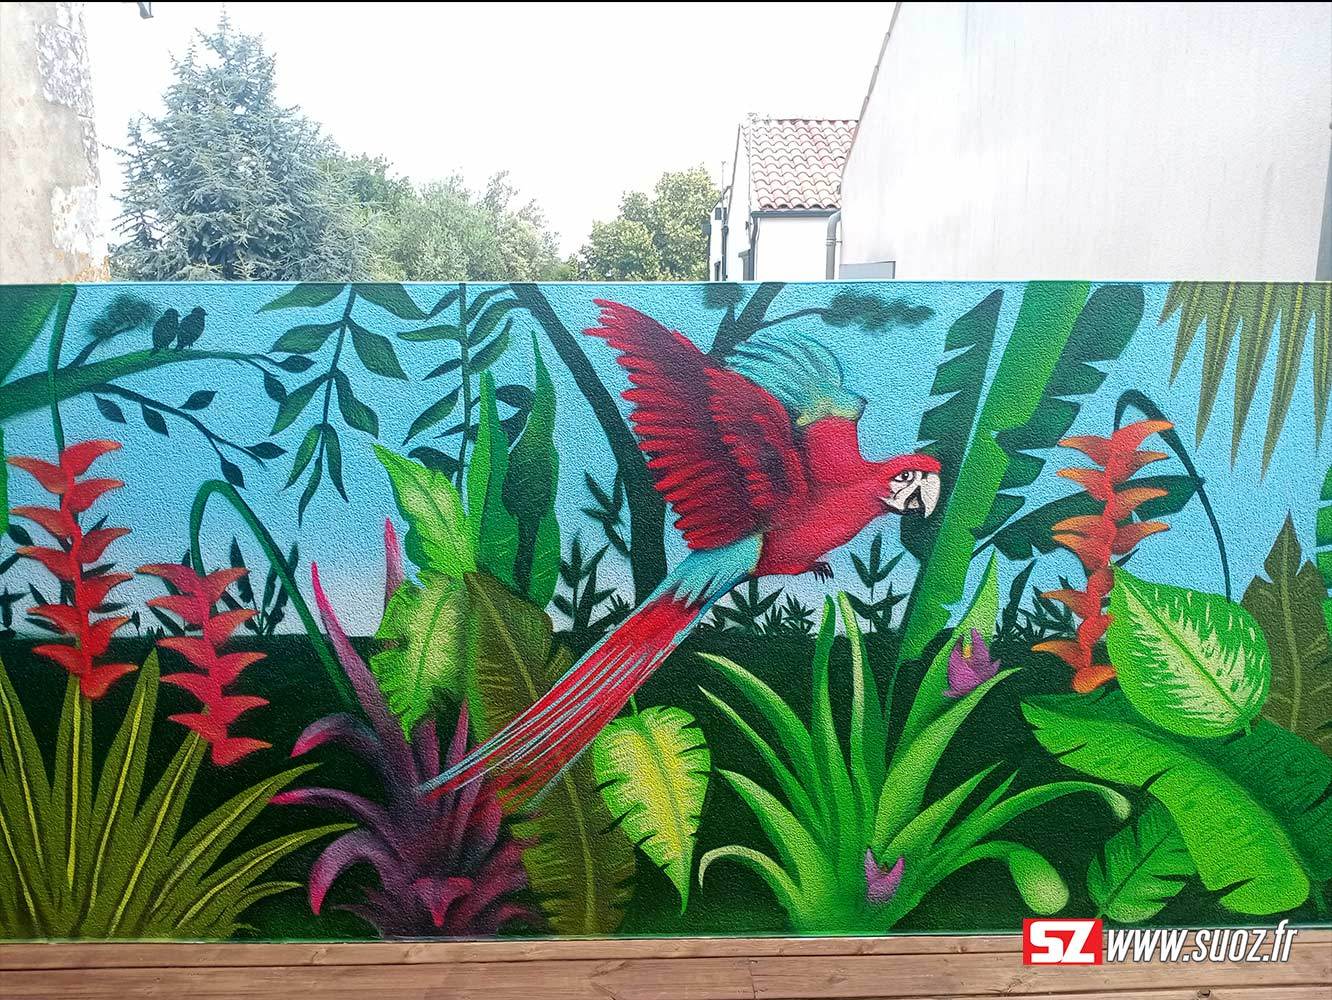 2-graffeur-professionel-suoz-jungle-fleur-tropical-perroquet-la-rochelle-france-decor-graffiti